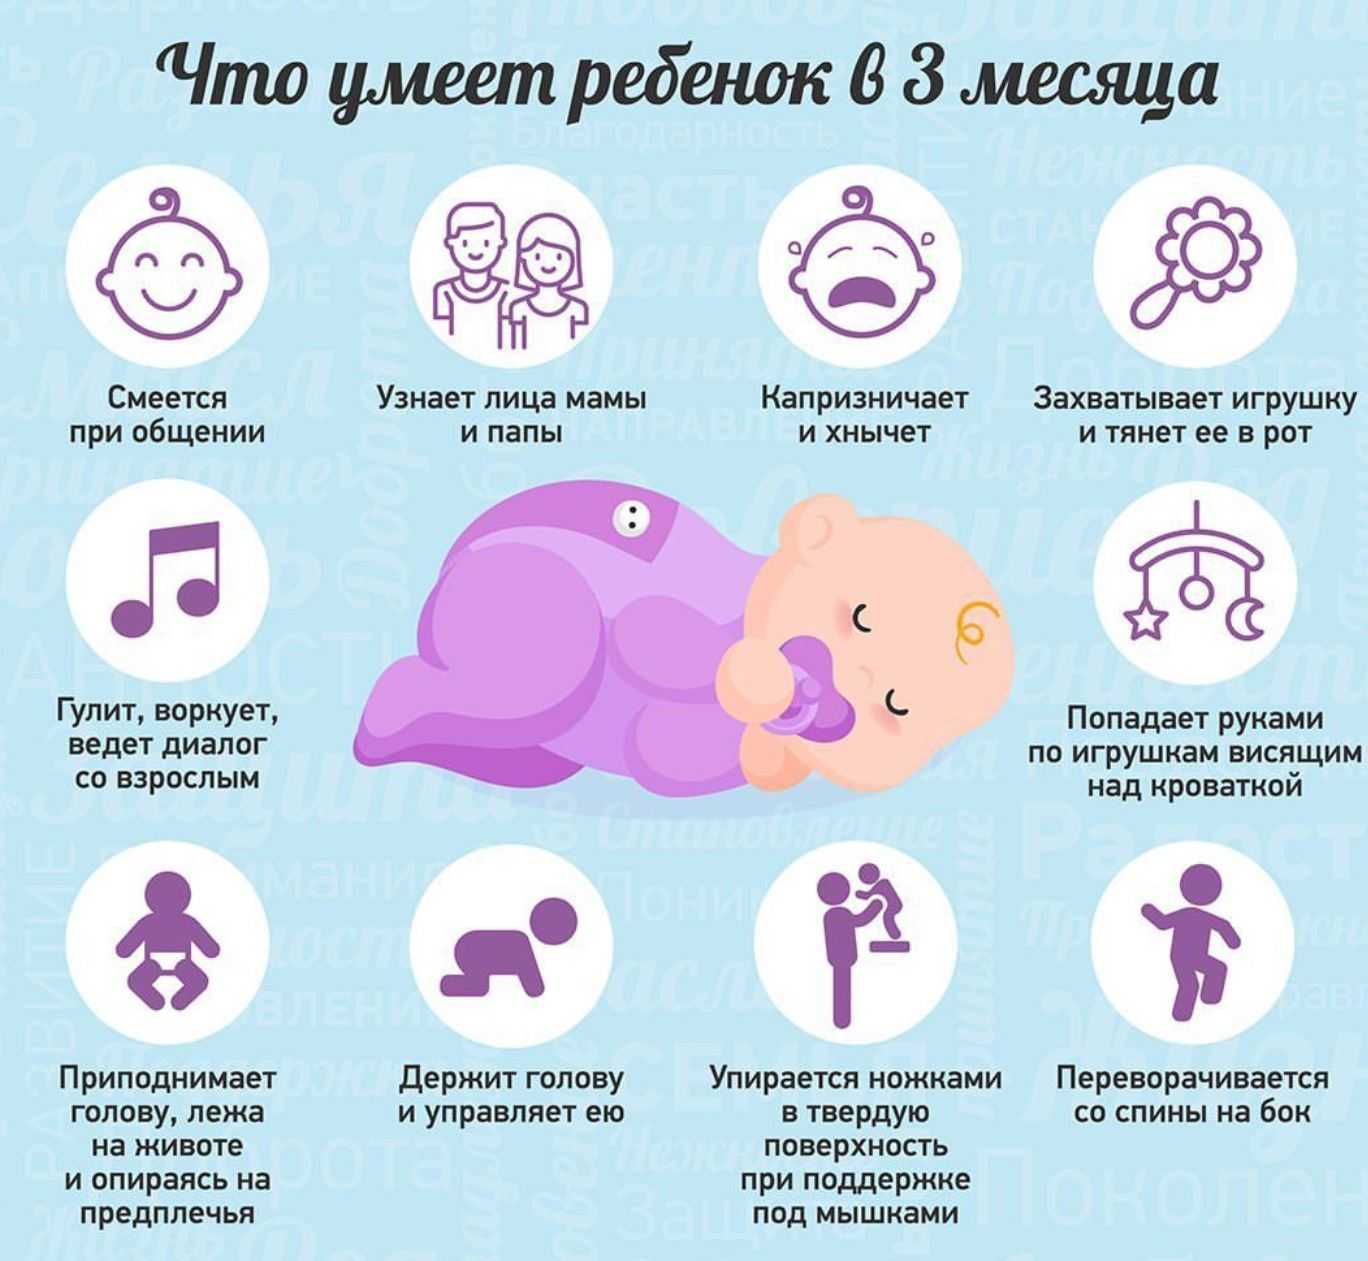 Развитие ребенка в 4 месяца: что должен уметь, новые навыки, польза грудного молока, рост и вес - календарь развития ребенка